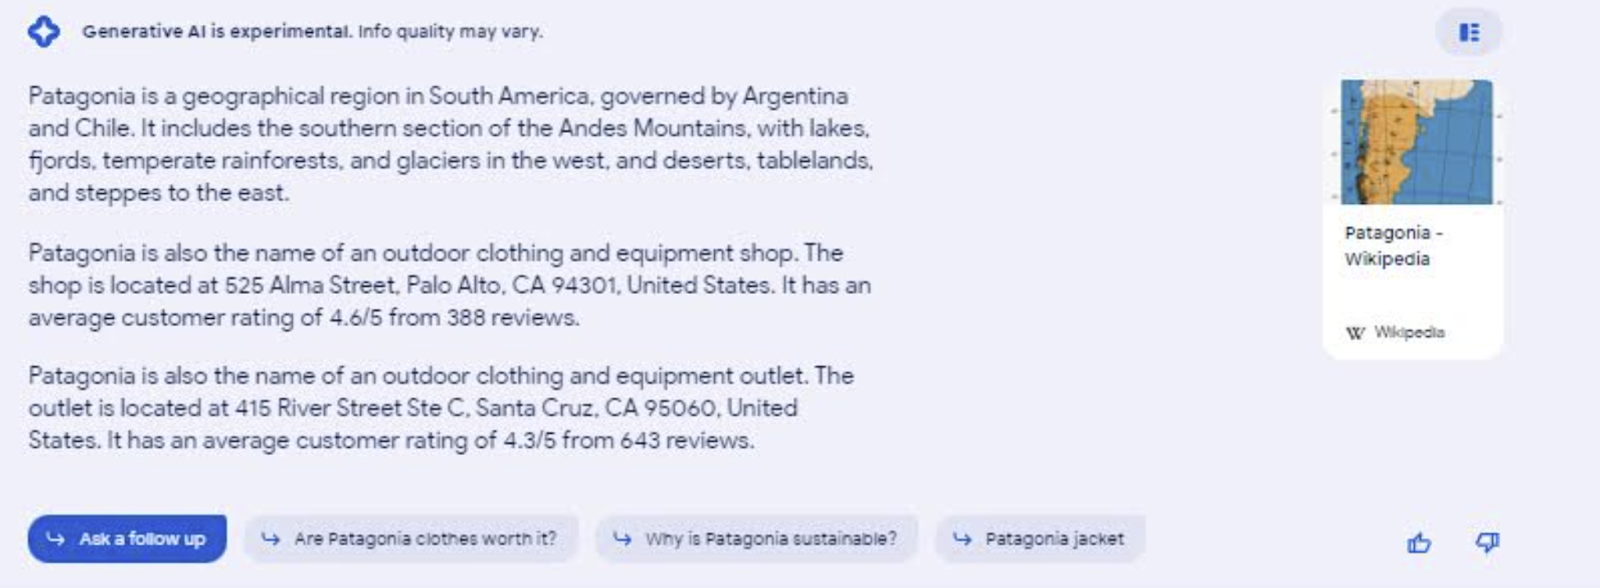 việc tìm kiếm patagonia cho thấy sự không chắc chắn của SGE về việc liệu mục đích tìm kiếm là tìm một cửa hàng hay đọc về một khu vực địa lý